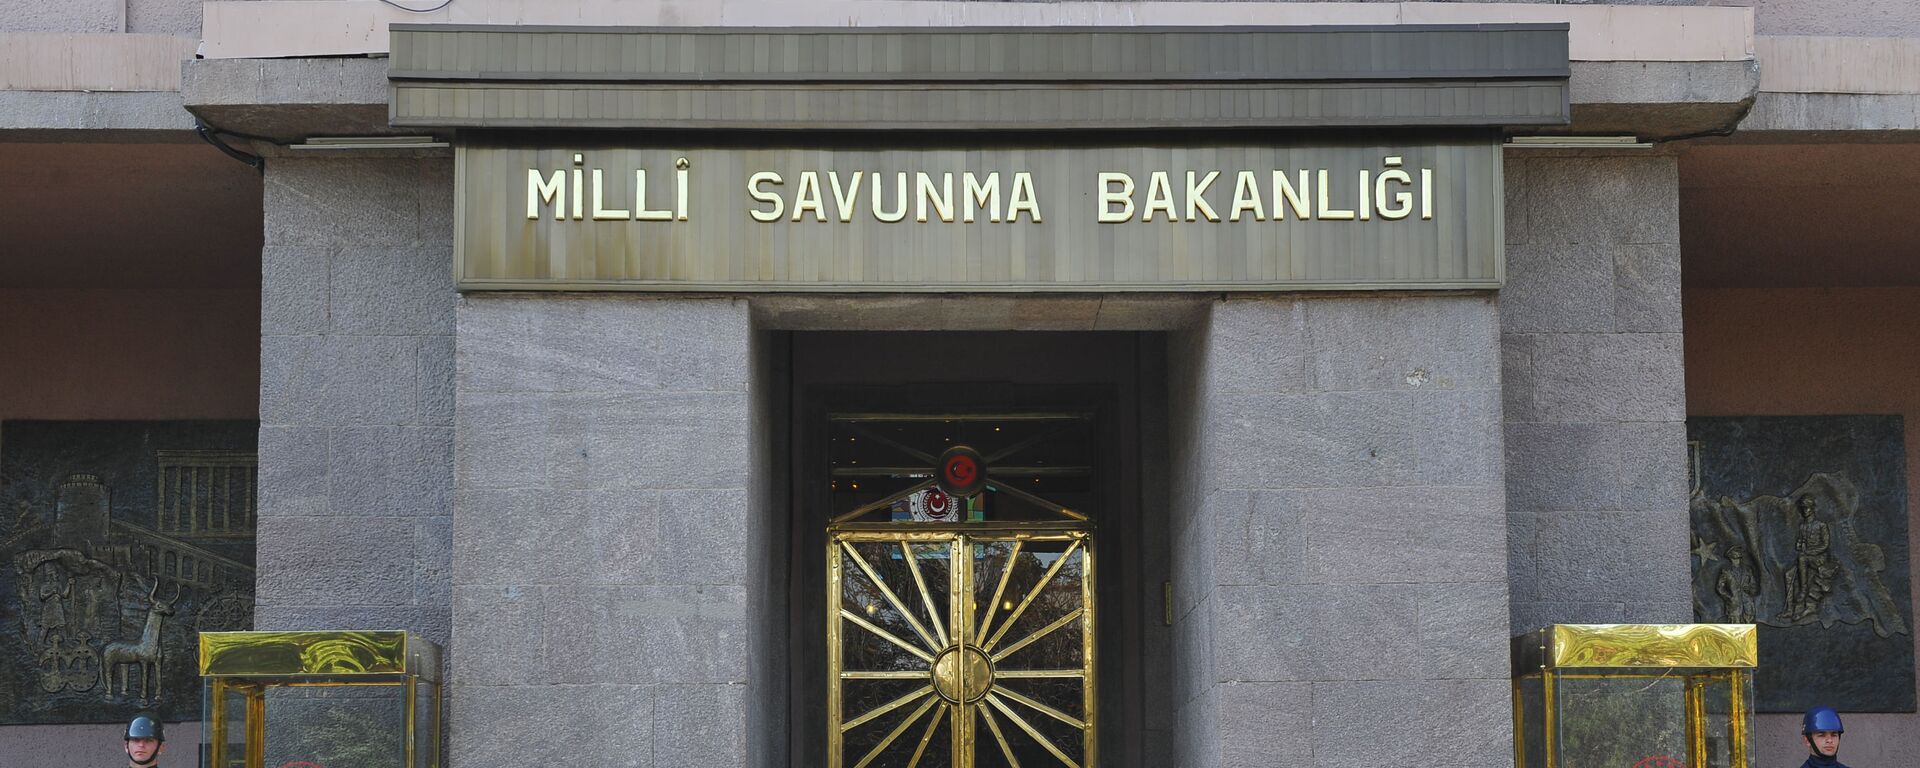 Milli Savunma Bakanlığı (MSB) - Sputnik Türkiye, 1920, 15.02.2021